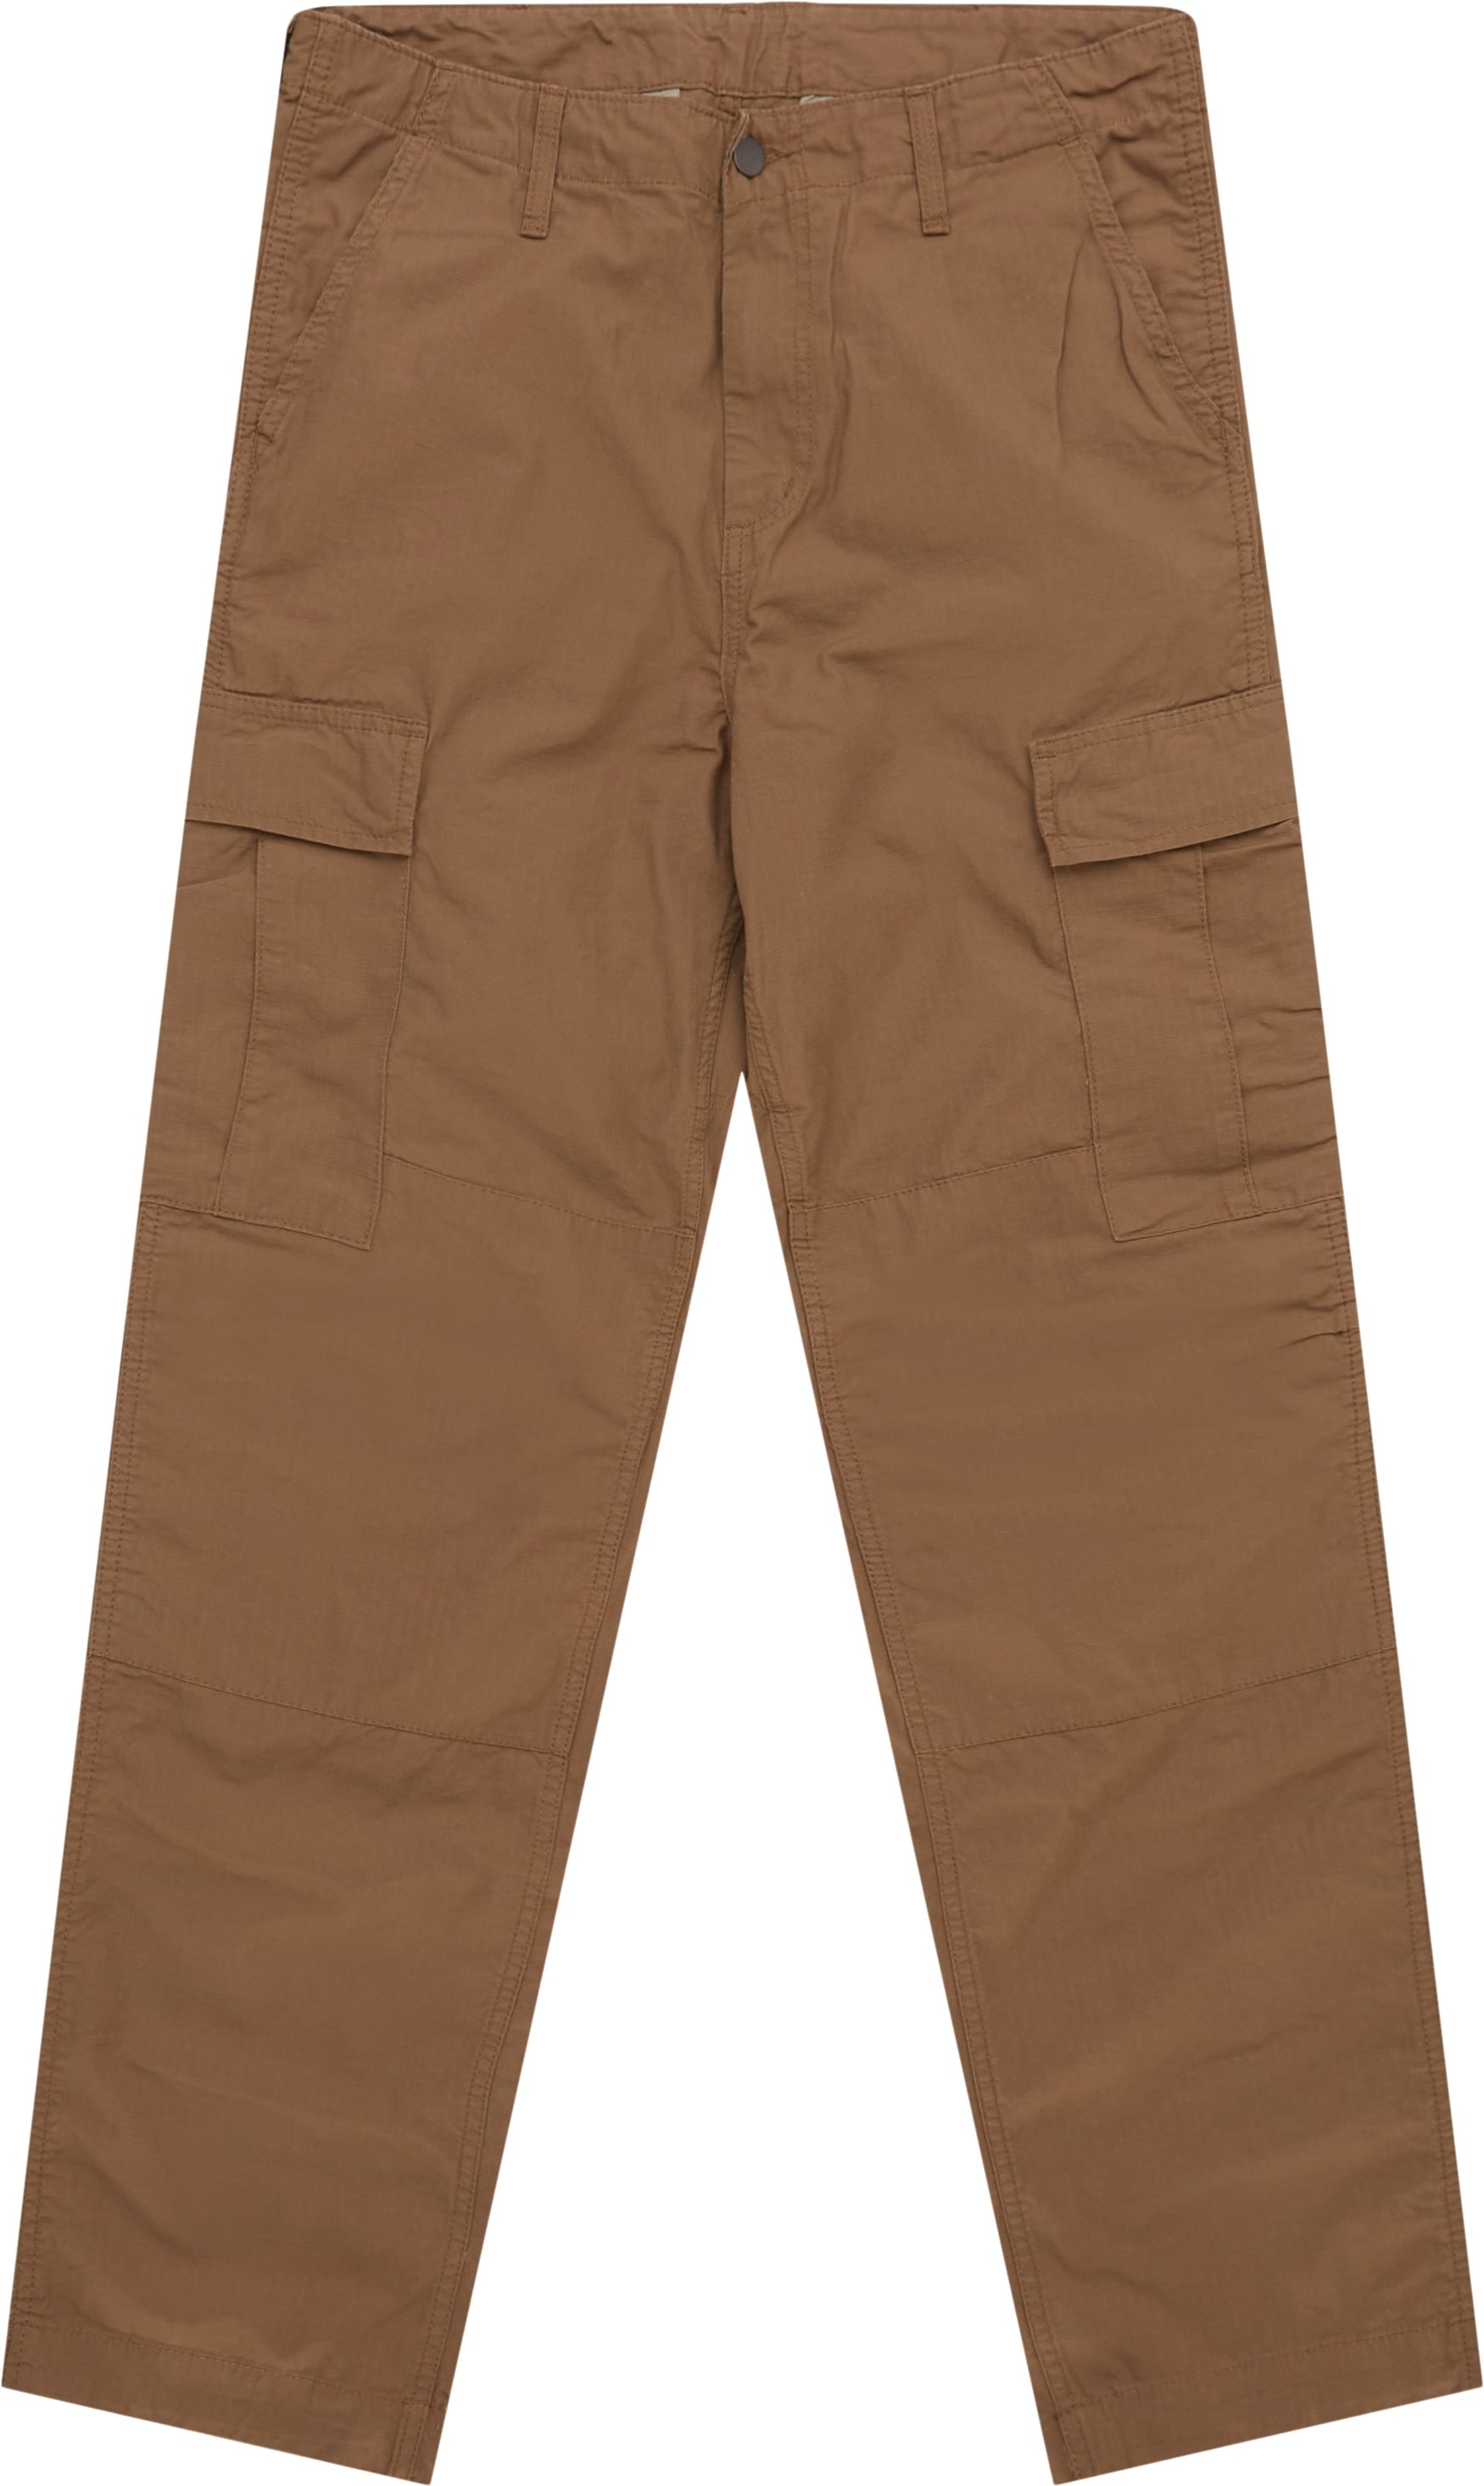 Carhartt WIP Trousers REGULAR CARGO PANT I032467 Brown